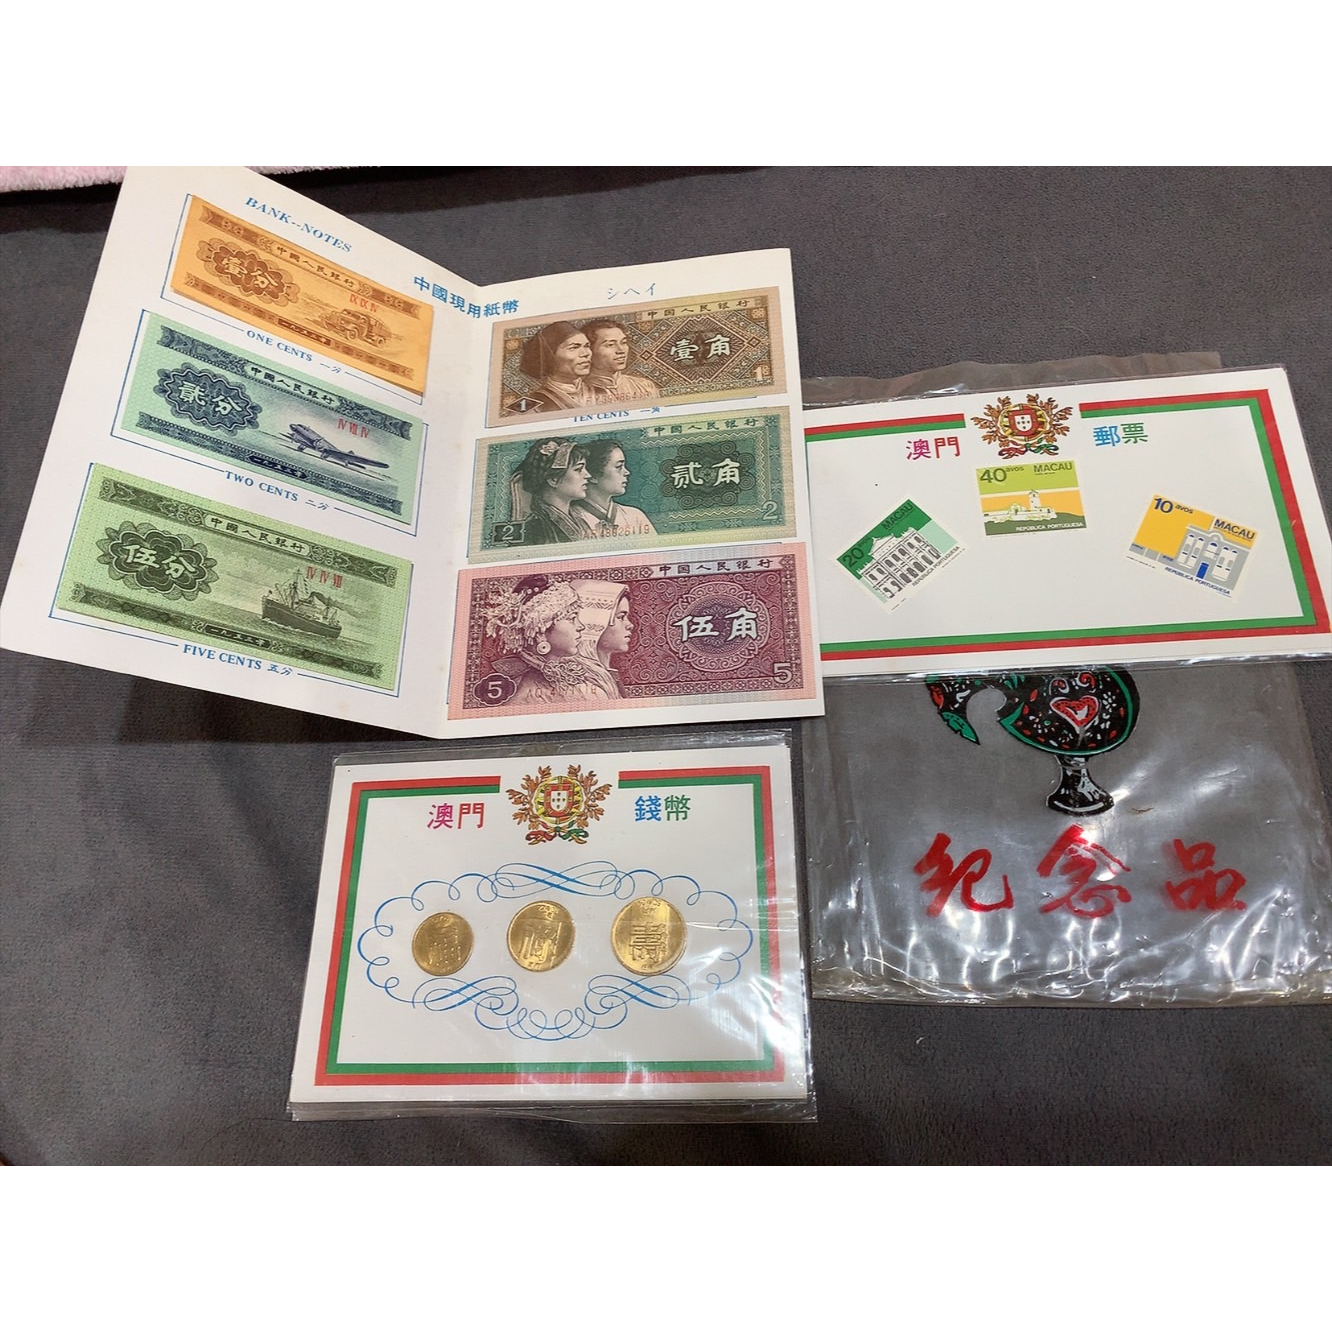 早期收藏品 澳門紙幣 錢幣 郵票 紀念品三套件組